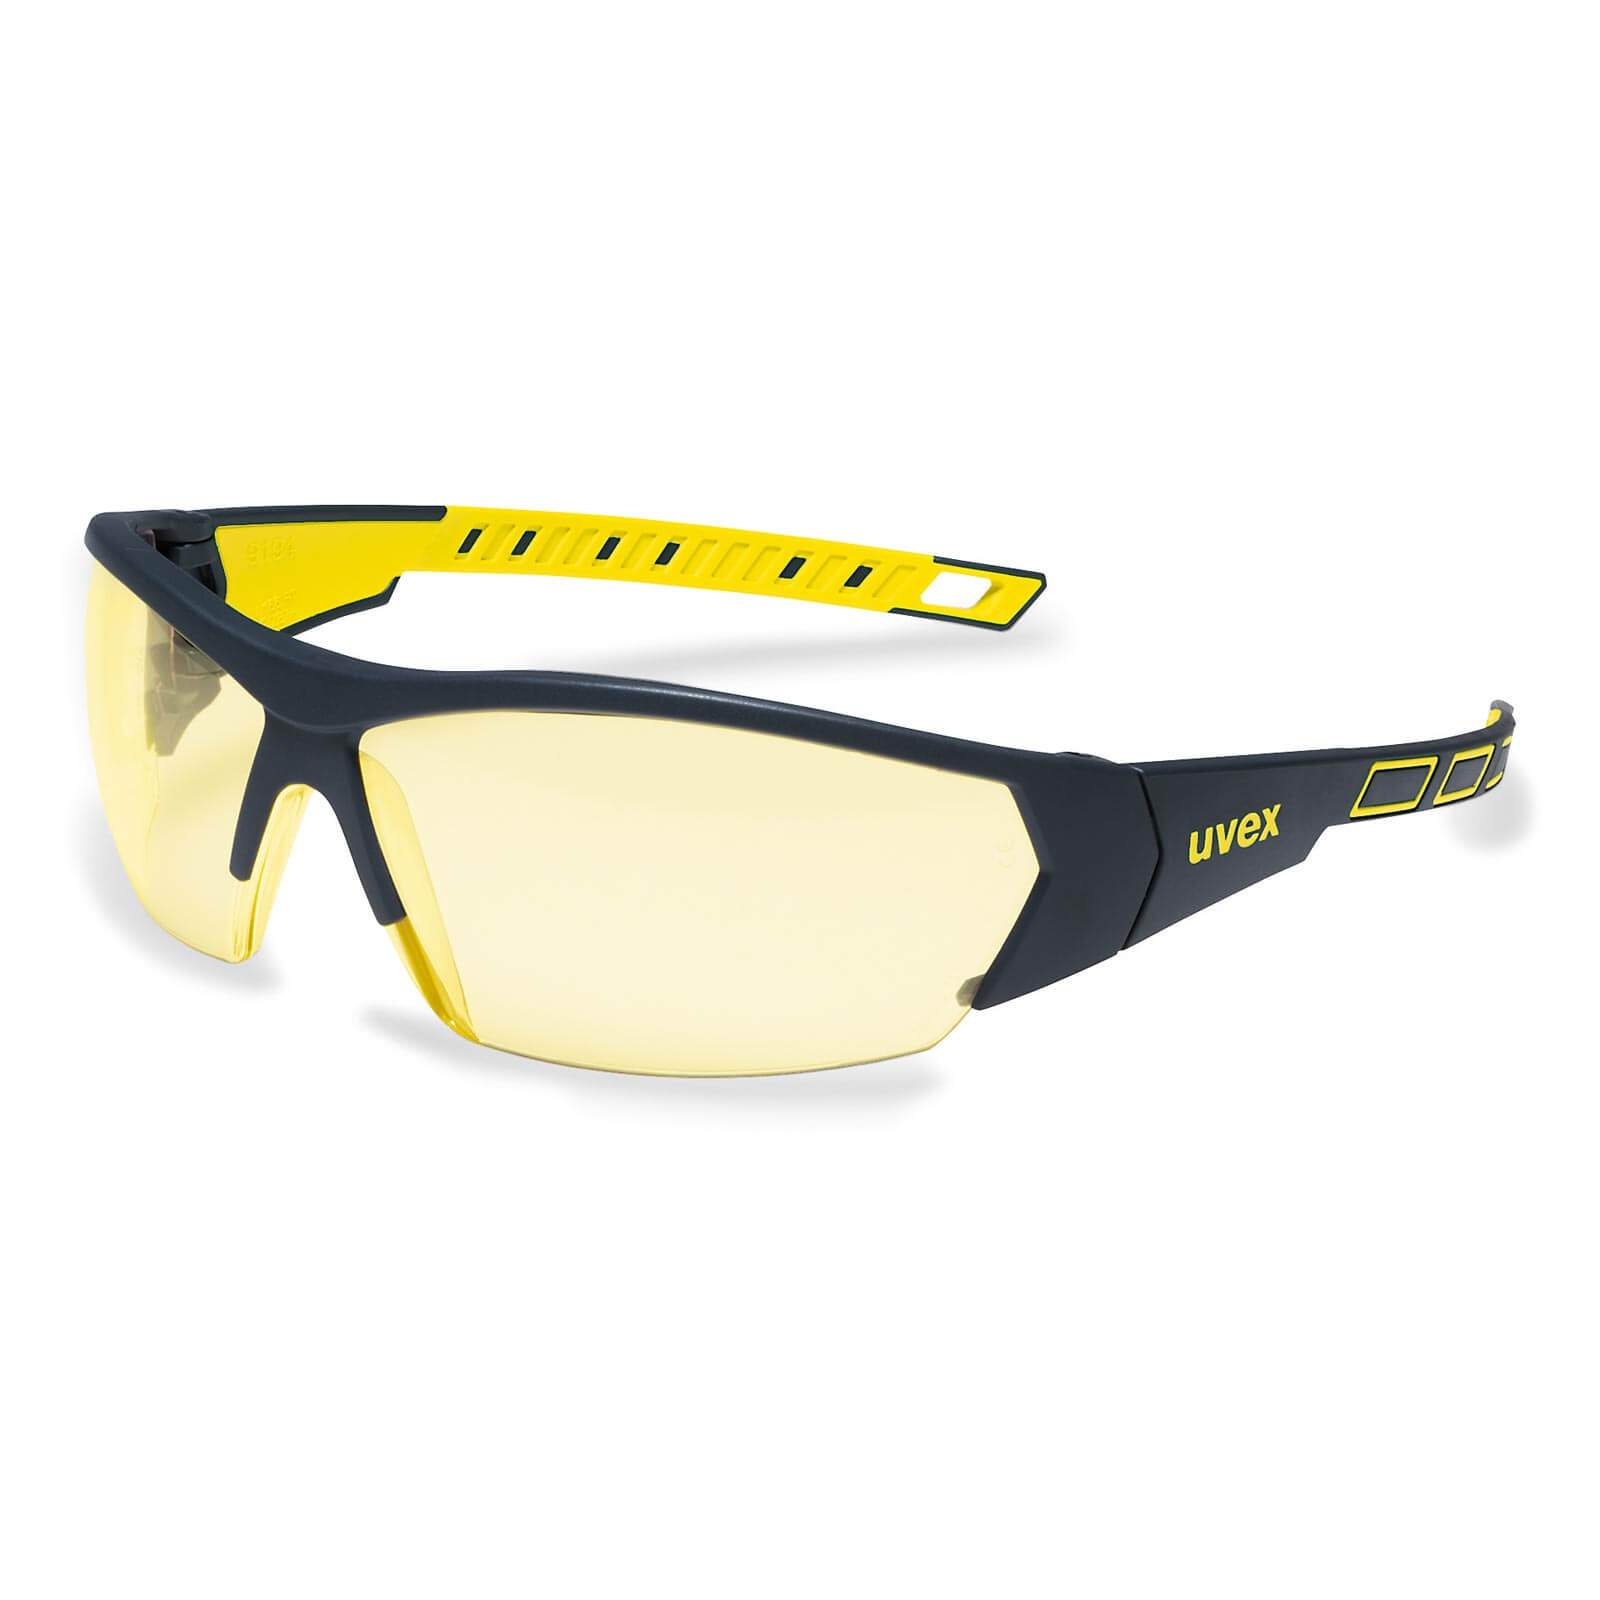 UVEX Schutzbrille i-works 9194 UV-Schutz Sicherheitsbrille, Arbeitsschutzbrille Farbe:anthrazit-gelb / amber von Uvex